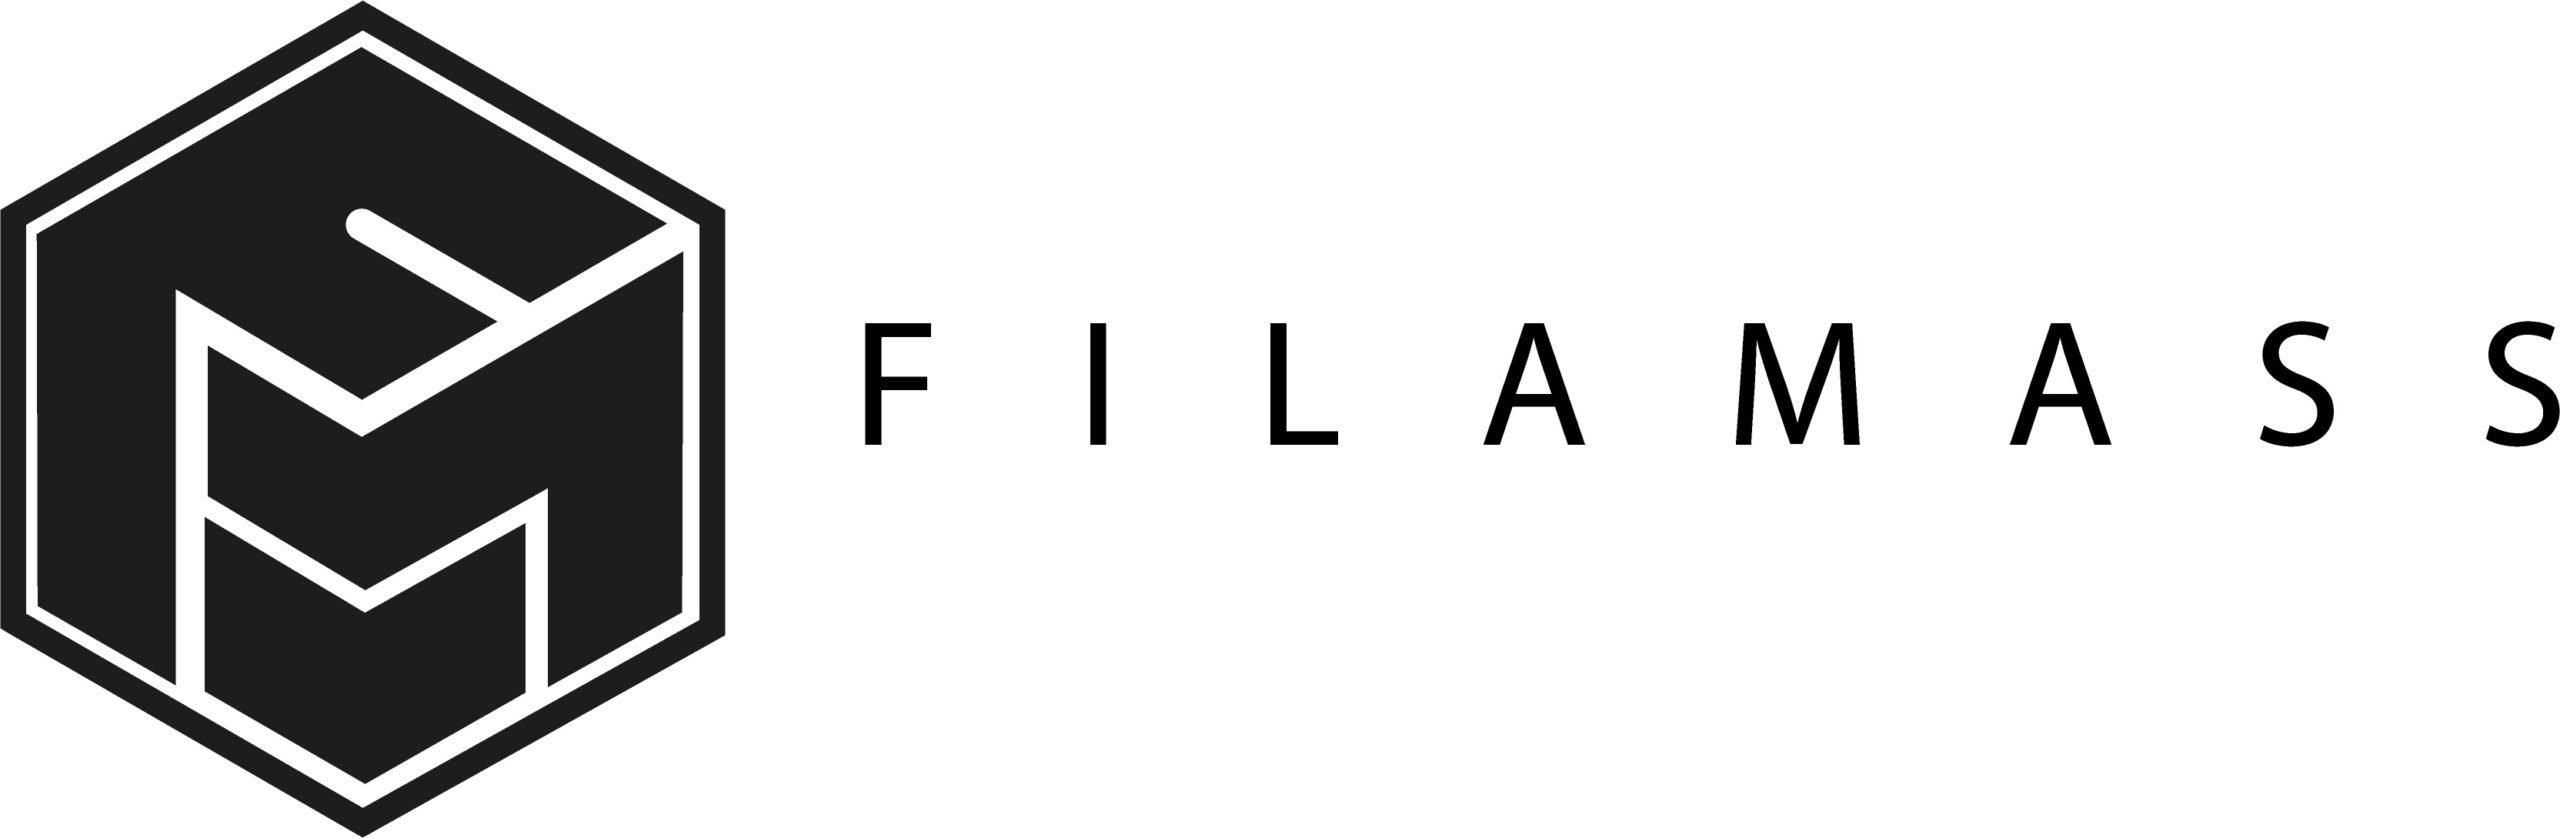 FilaMass_logo